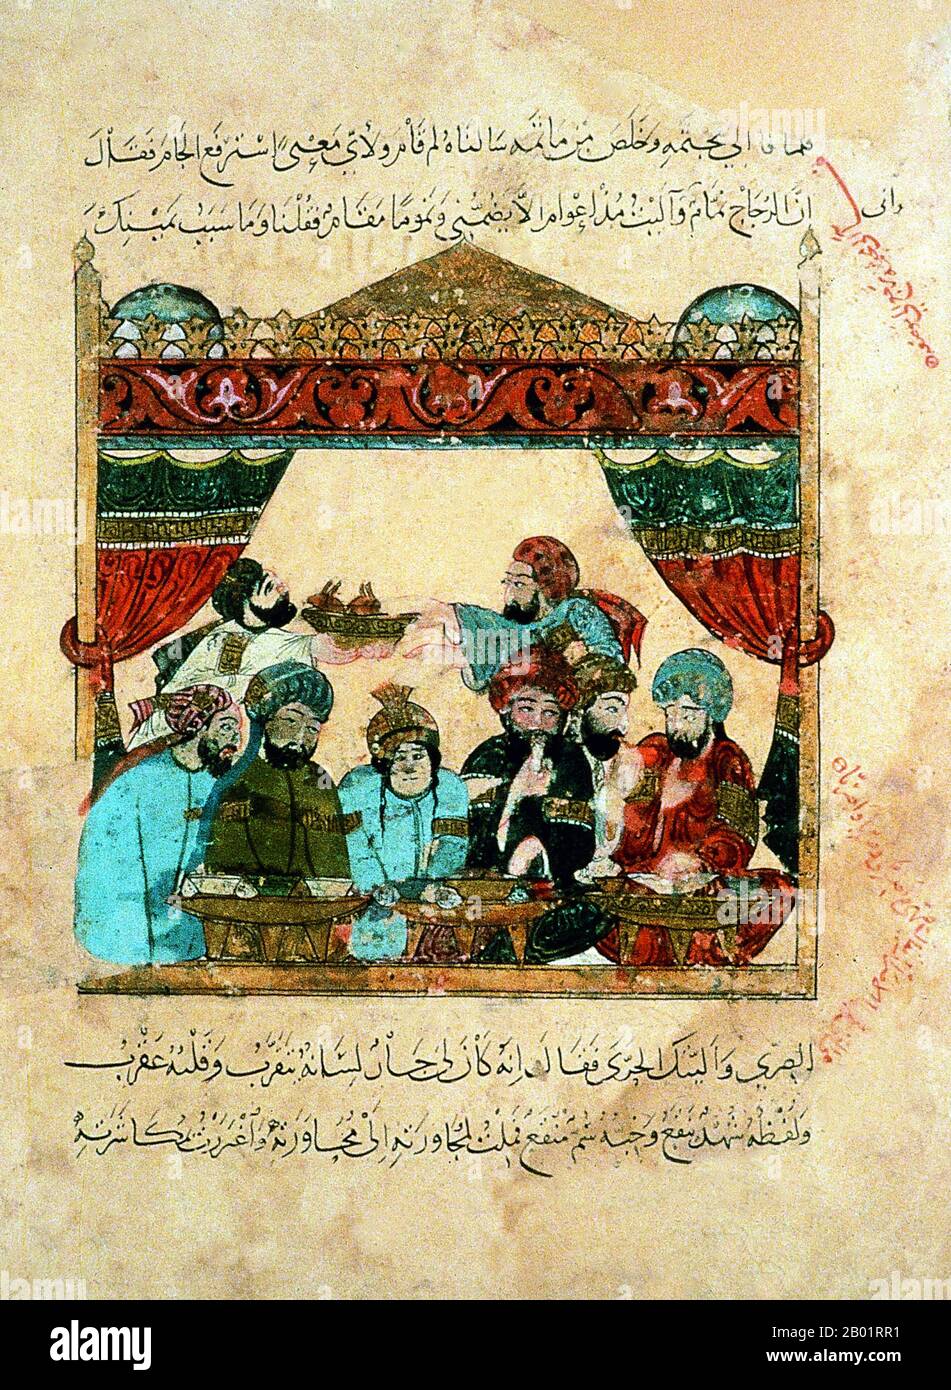 Iraq: Una festa. Pittura in miniatura di Yahya ibn Mahmud al-Wasiti, 1237 d.C. Yahyâ ibn Mahmûd al-Wâsitî è stato un artista arabo islamico del XIII secolo. Al-Wasiti è nato a Wasit, nel sud dell'Iraq. Era noto per le sue illustrazioni del Maqam di al-Hariri. I Maqāma (letteralmente "assemblee") sono un genere letterario arabo (originariamente) di prosa rimata con intervalli di poesia in cui la stravaganza retorica è evidente. Si dice che l'autore del X secolo Badī' al-Zaman al-Hamadhāni abbia inventato la forma, che fu estesa da al-Hariri di Bassora nel secolo successivo. Foto Stock